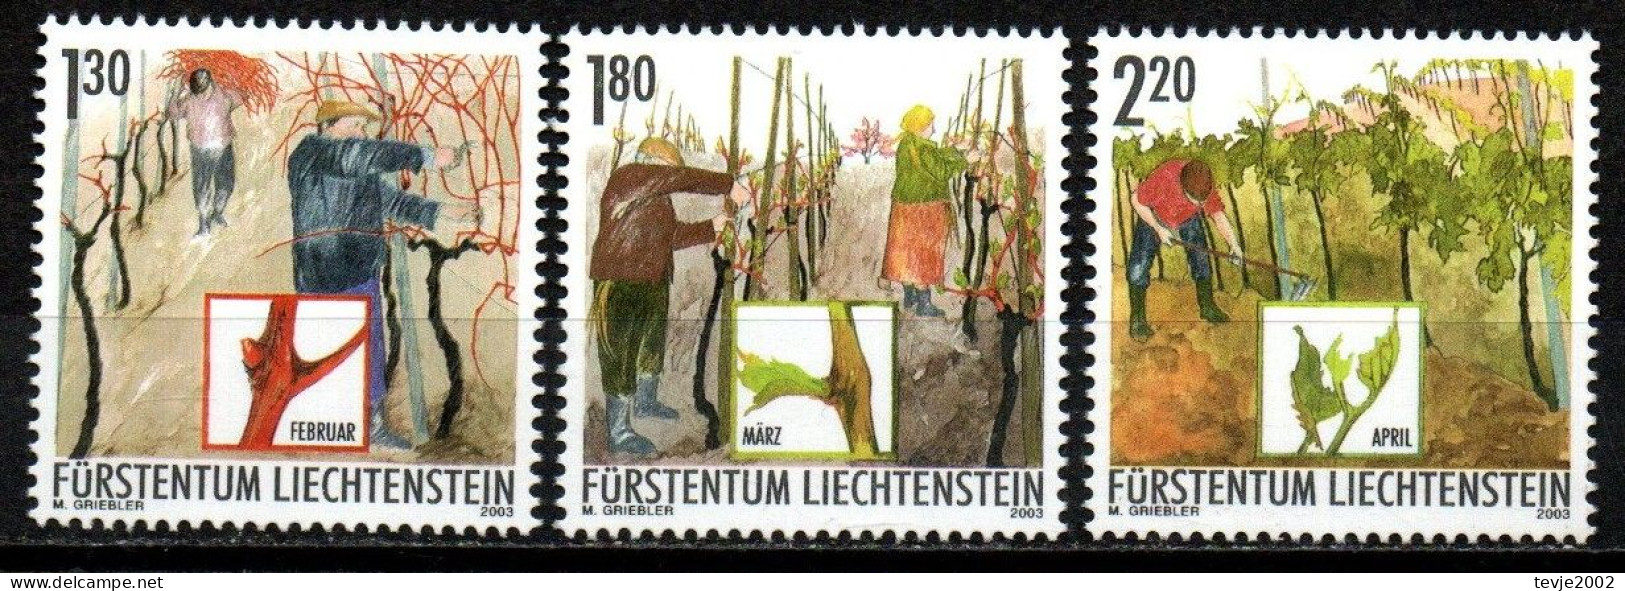 Liechtenstein 2003 - Mi.Nr. 1311 - 1313 - Postfrisch MNH - Weinbau Winzer Wine Growing Winemaker - Landwirtschaft